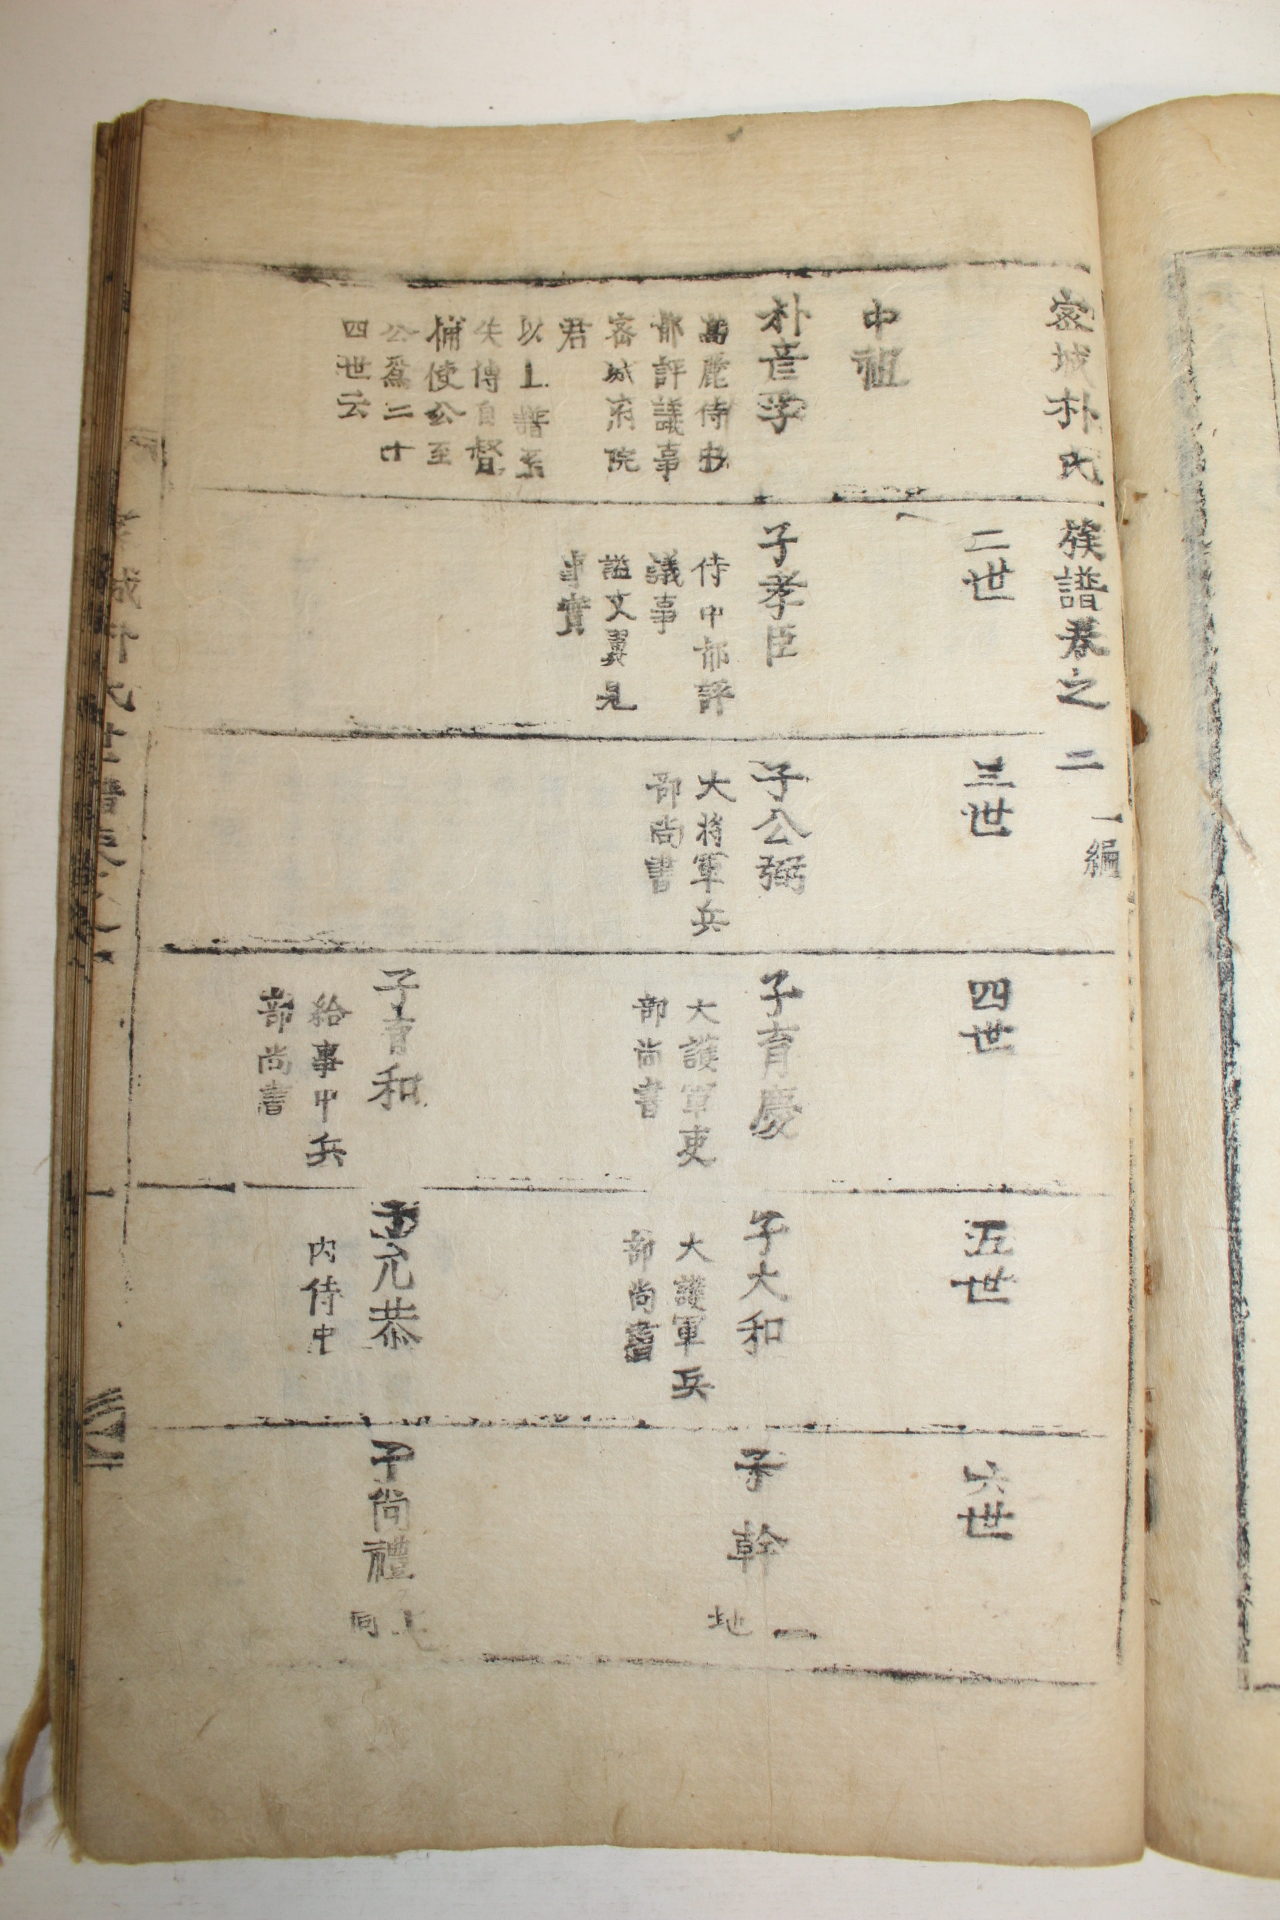 1765년(영조41년) 목판본 밀성박씨세보(密城朴氏世譜) 4책